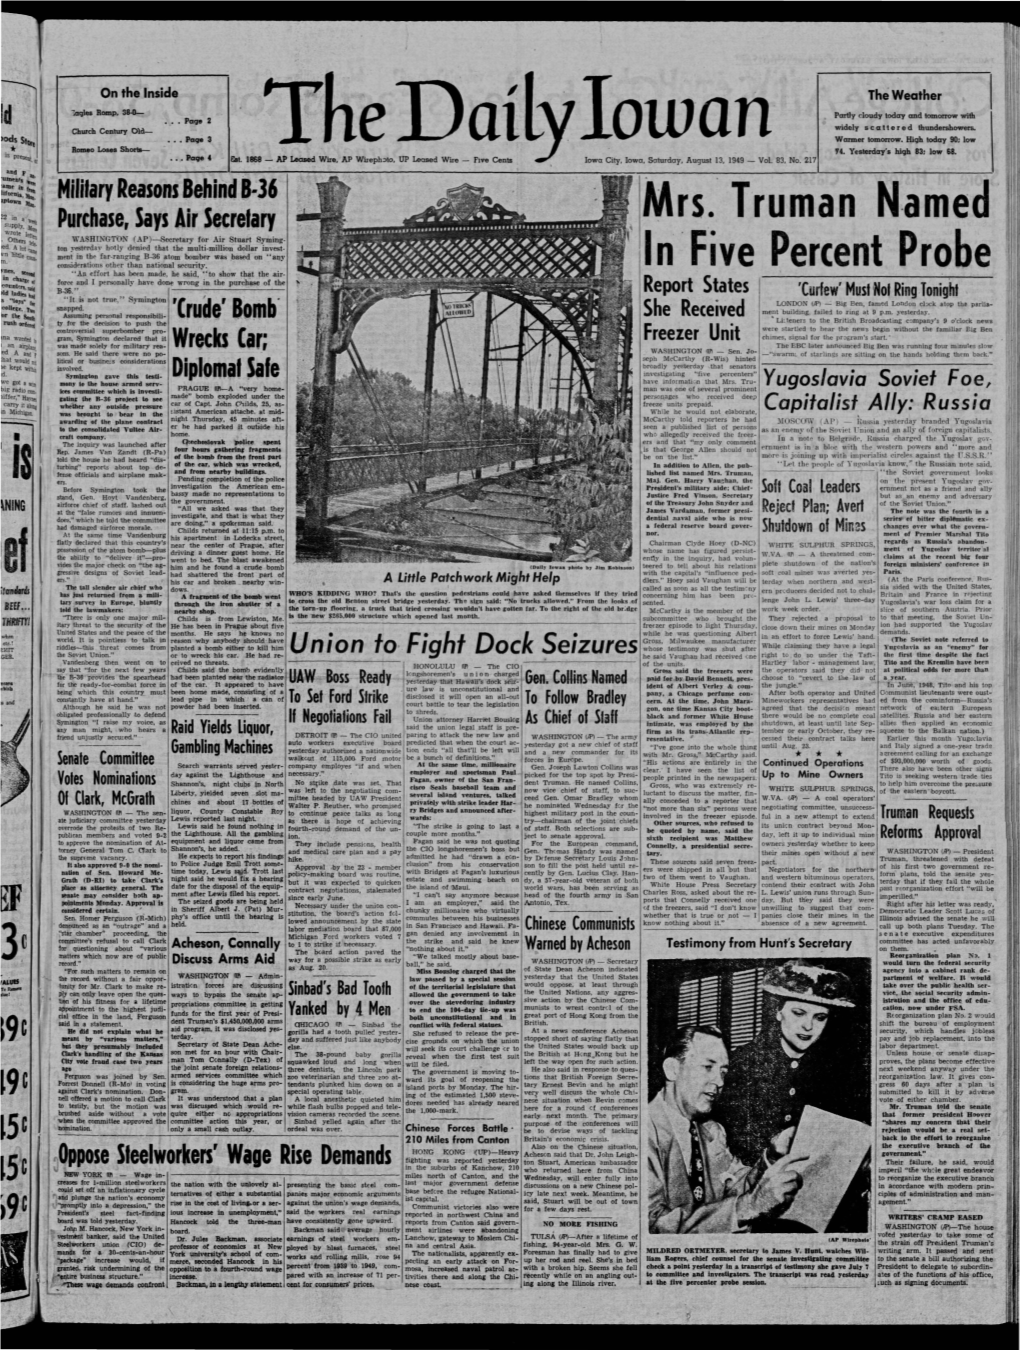 Daily Iowan (Iowa City, Iowa), 1949-08-13